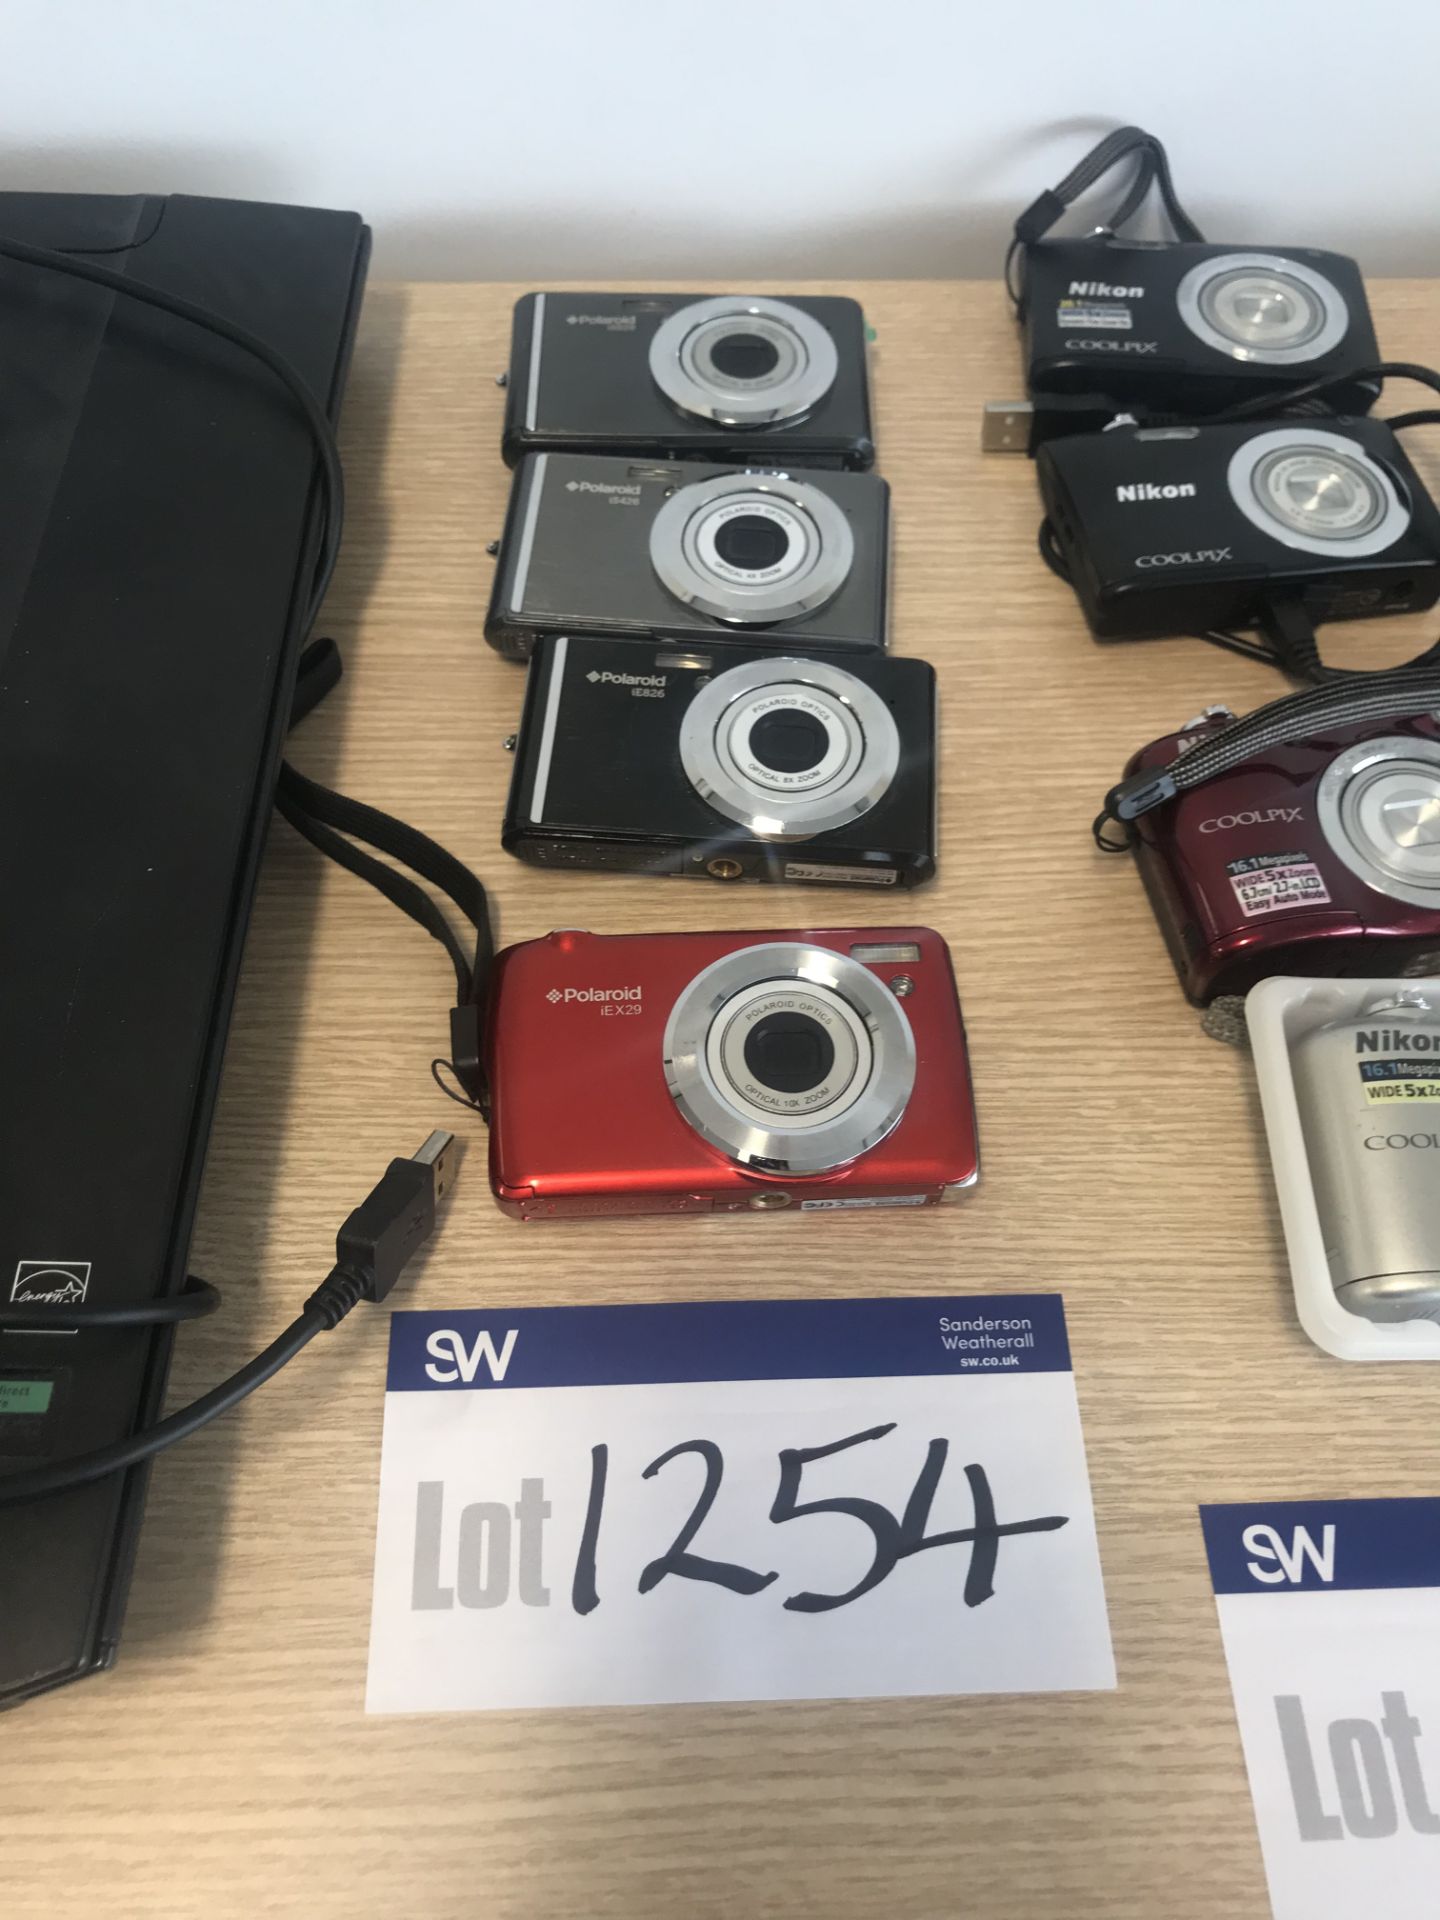 4 x Assorted Polaroid Digital Cameras, Models: IX8